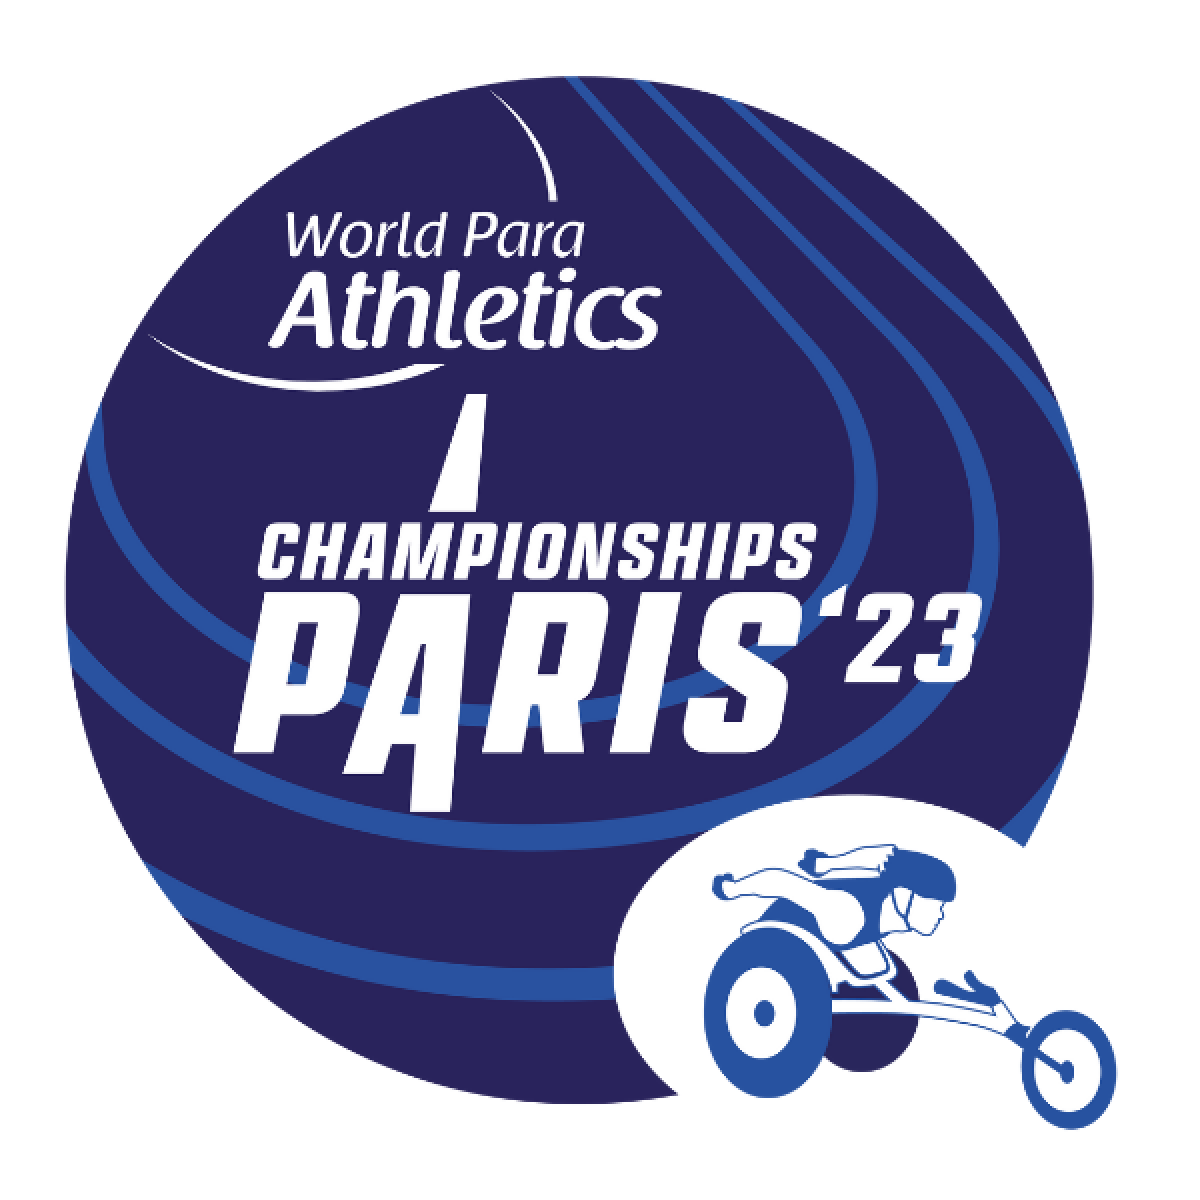 Championnats du Monde de Para Athlétisme PARIS'23